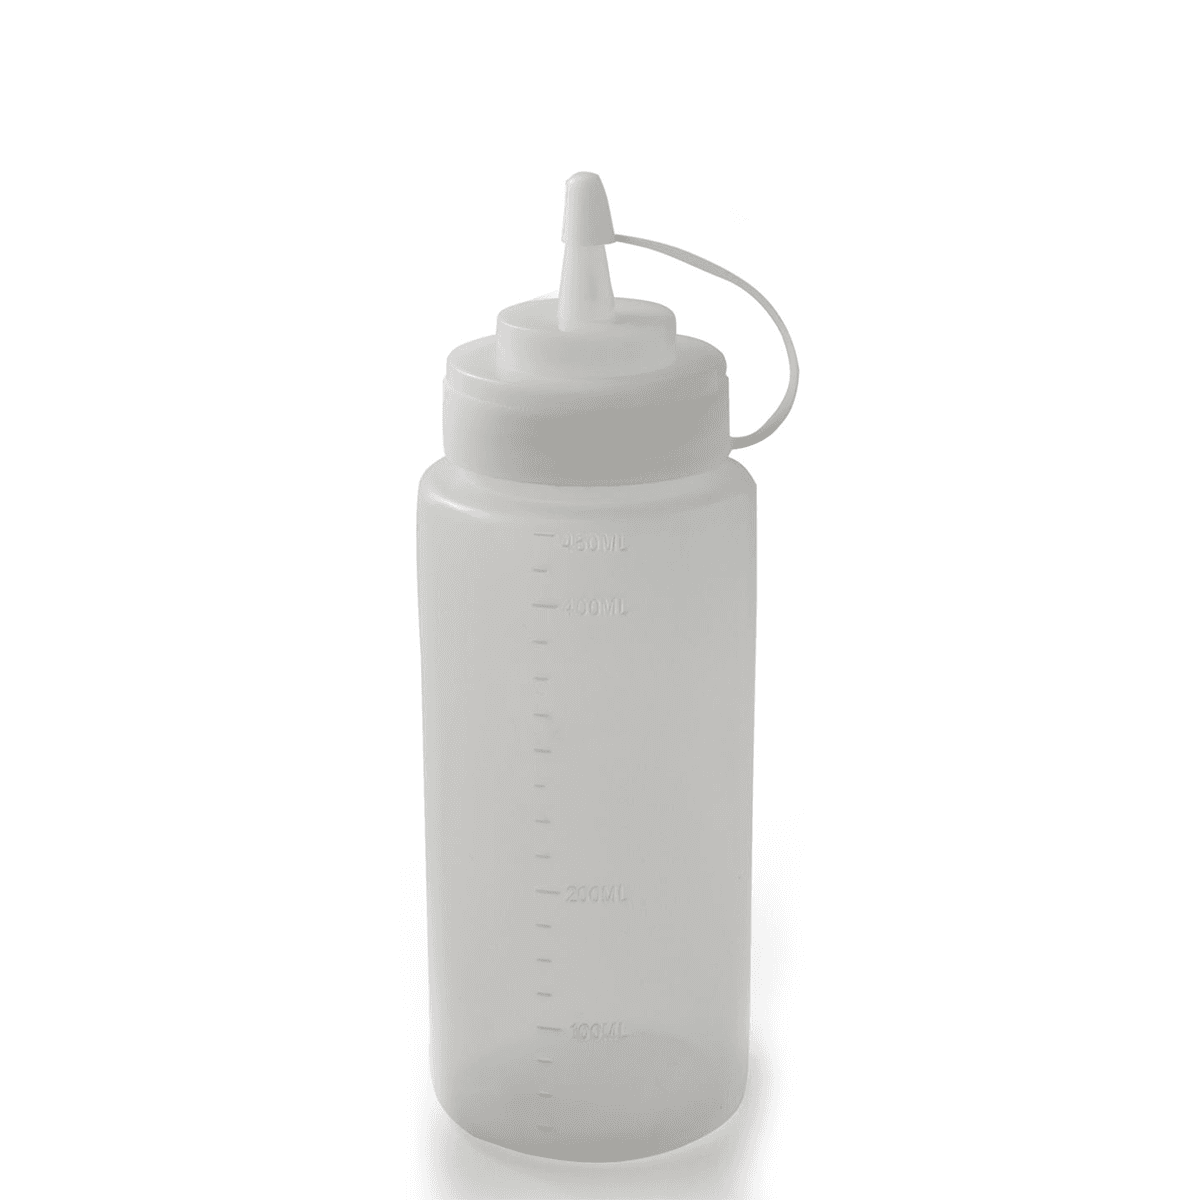 سكويزر 450 مل بلاستيك أبيض مع غطاء White Plastic 450 ml Sqeezer with Lid White